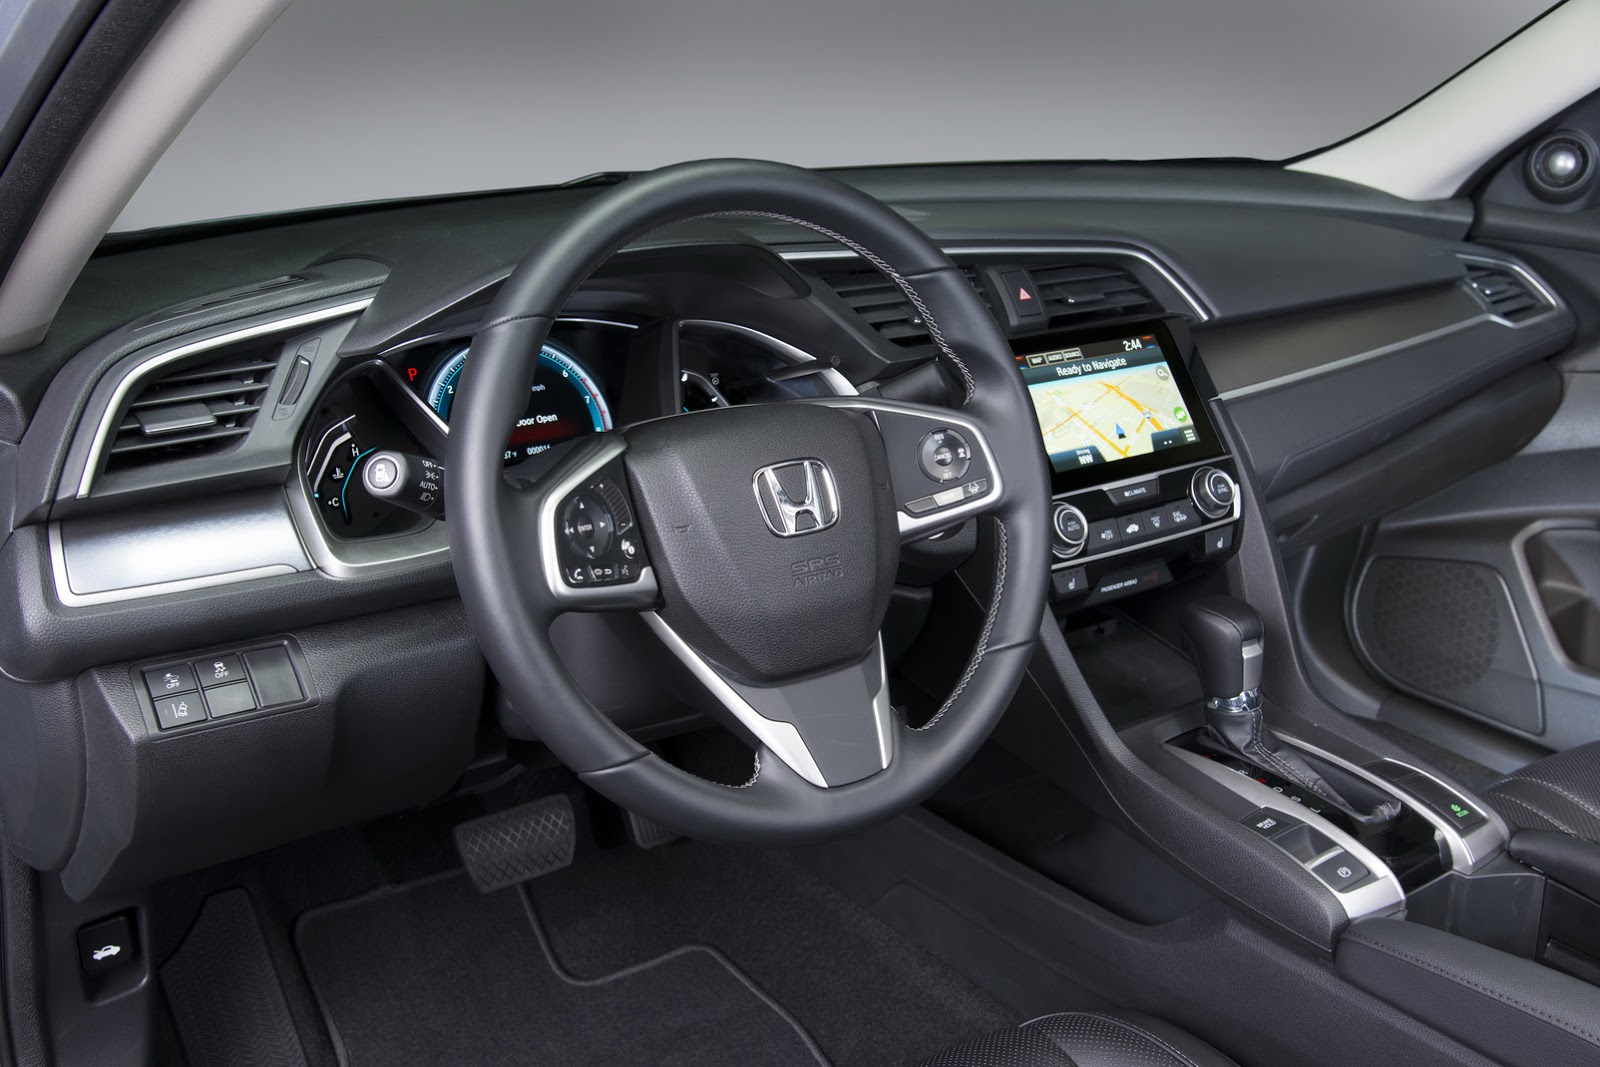 Honda Civic thế hệ mới “lột xác” hoàn toàn chính thức trình làng